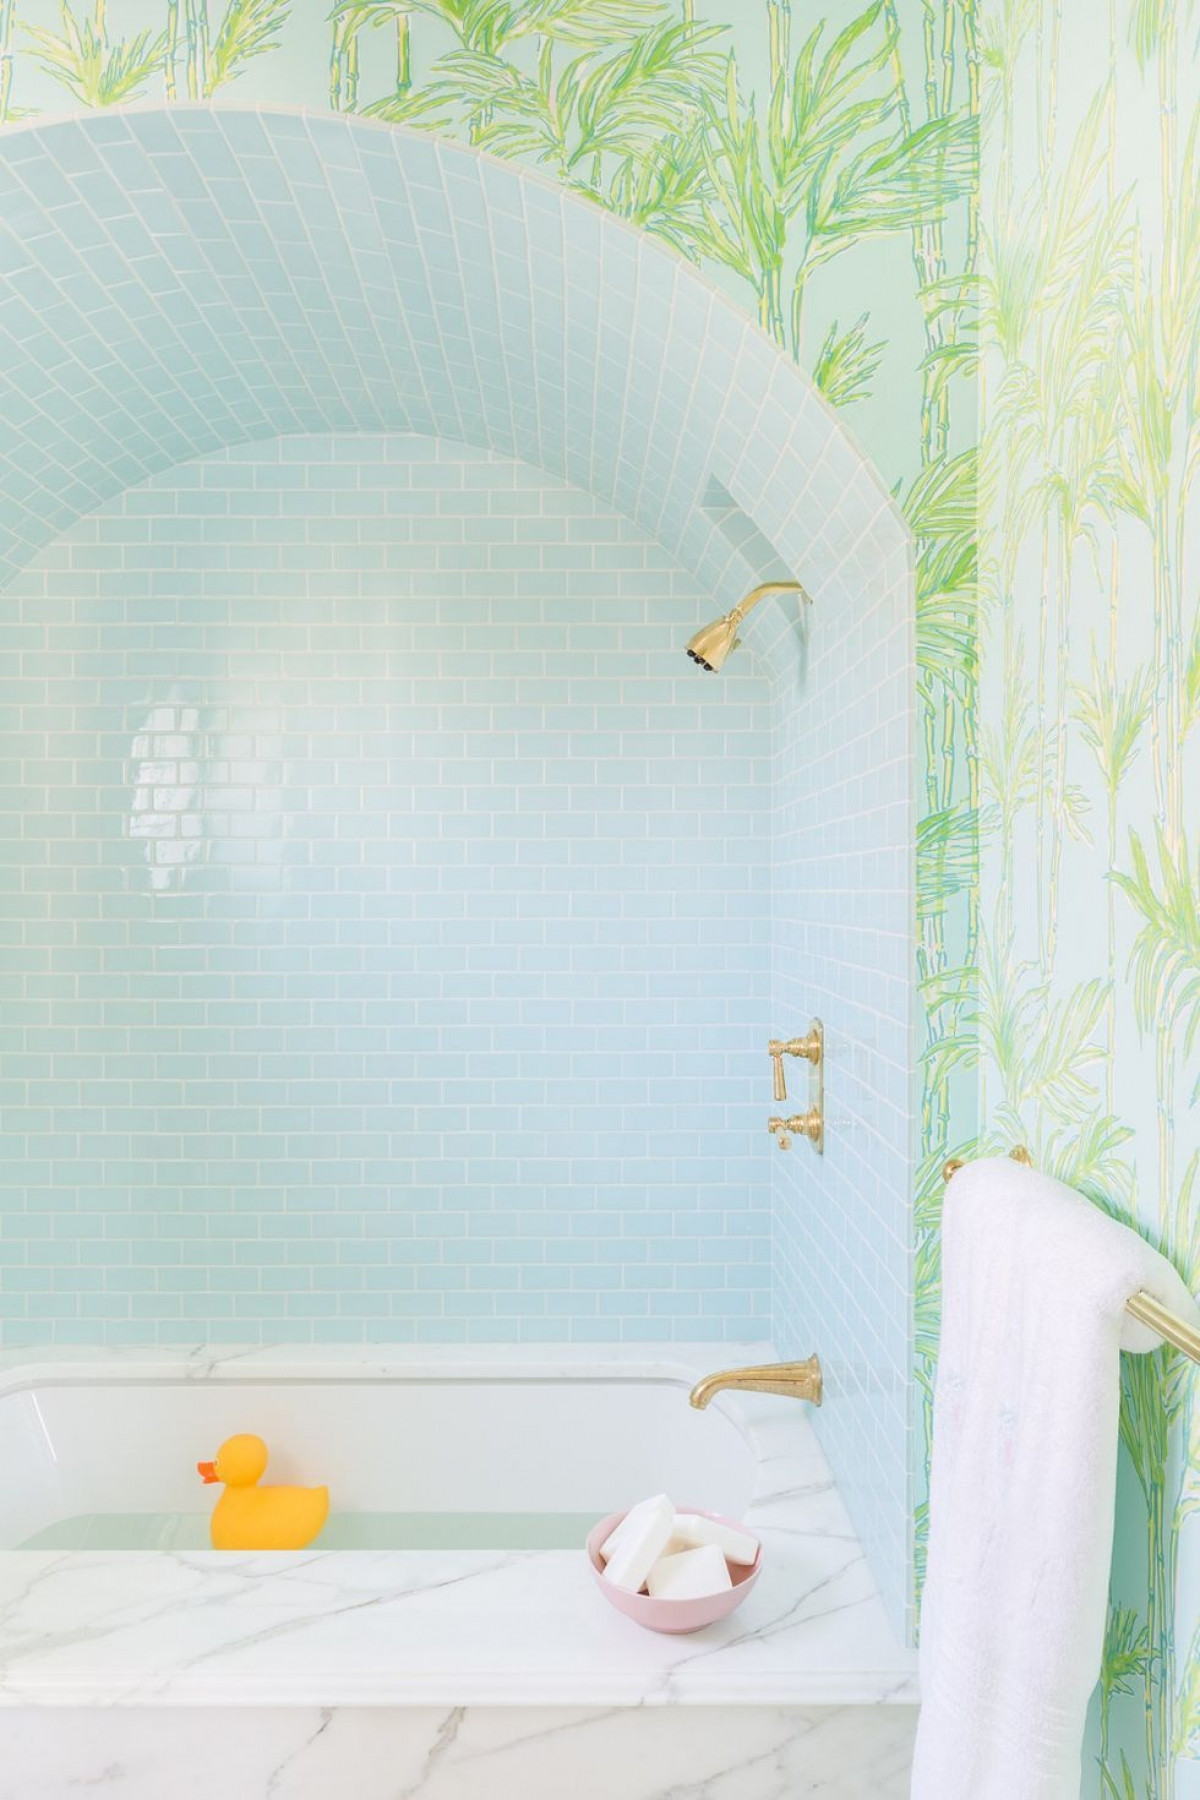 Bồn tắm bằng đá cẩm thạch, giấy dán tường lấy cảm hứng từ thực vật, gạch lát màu xanh dịu nhẹ khiến phòng tắm này trở nên đầy màu sắc.